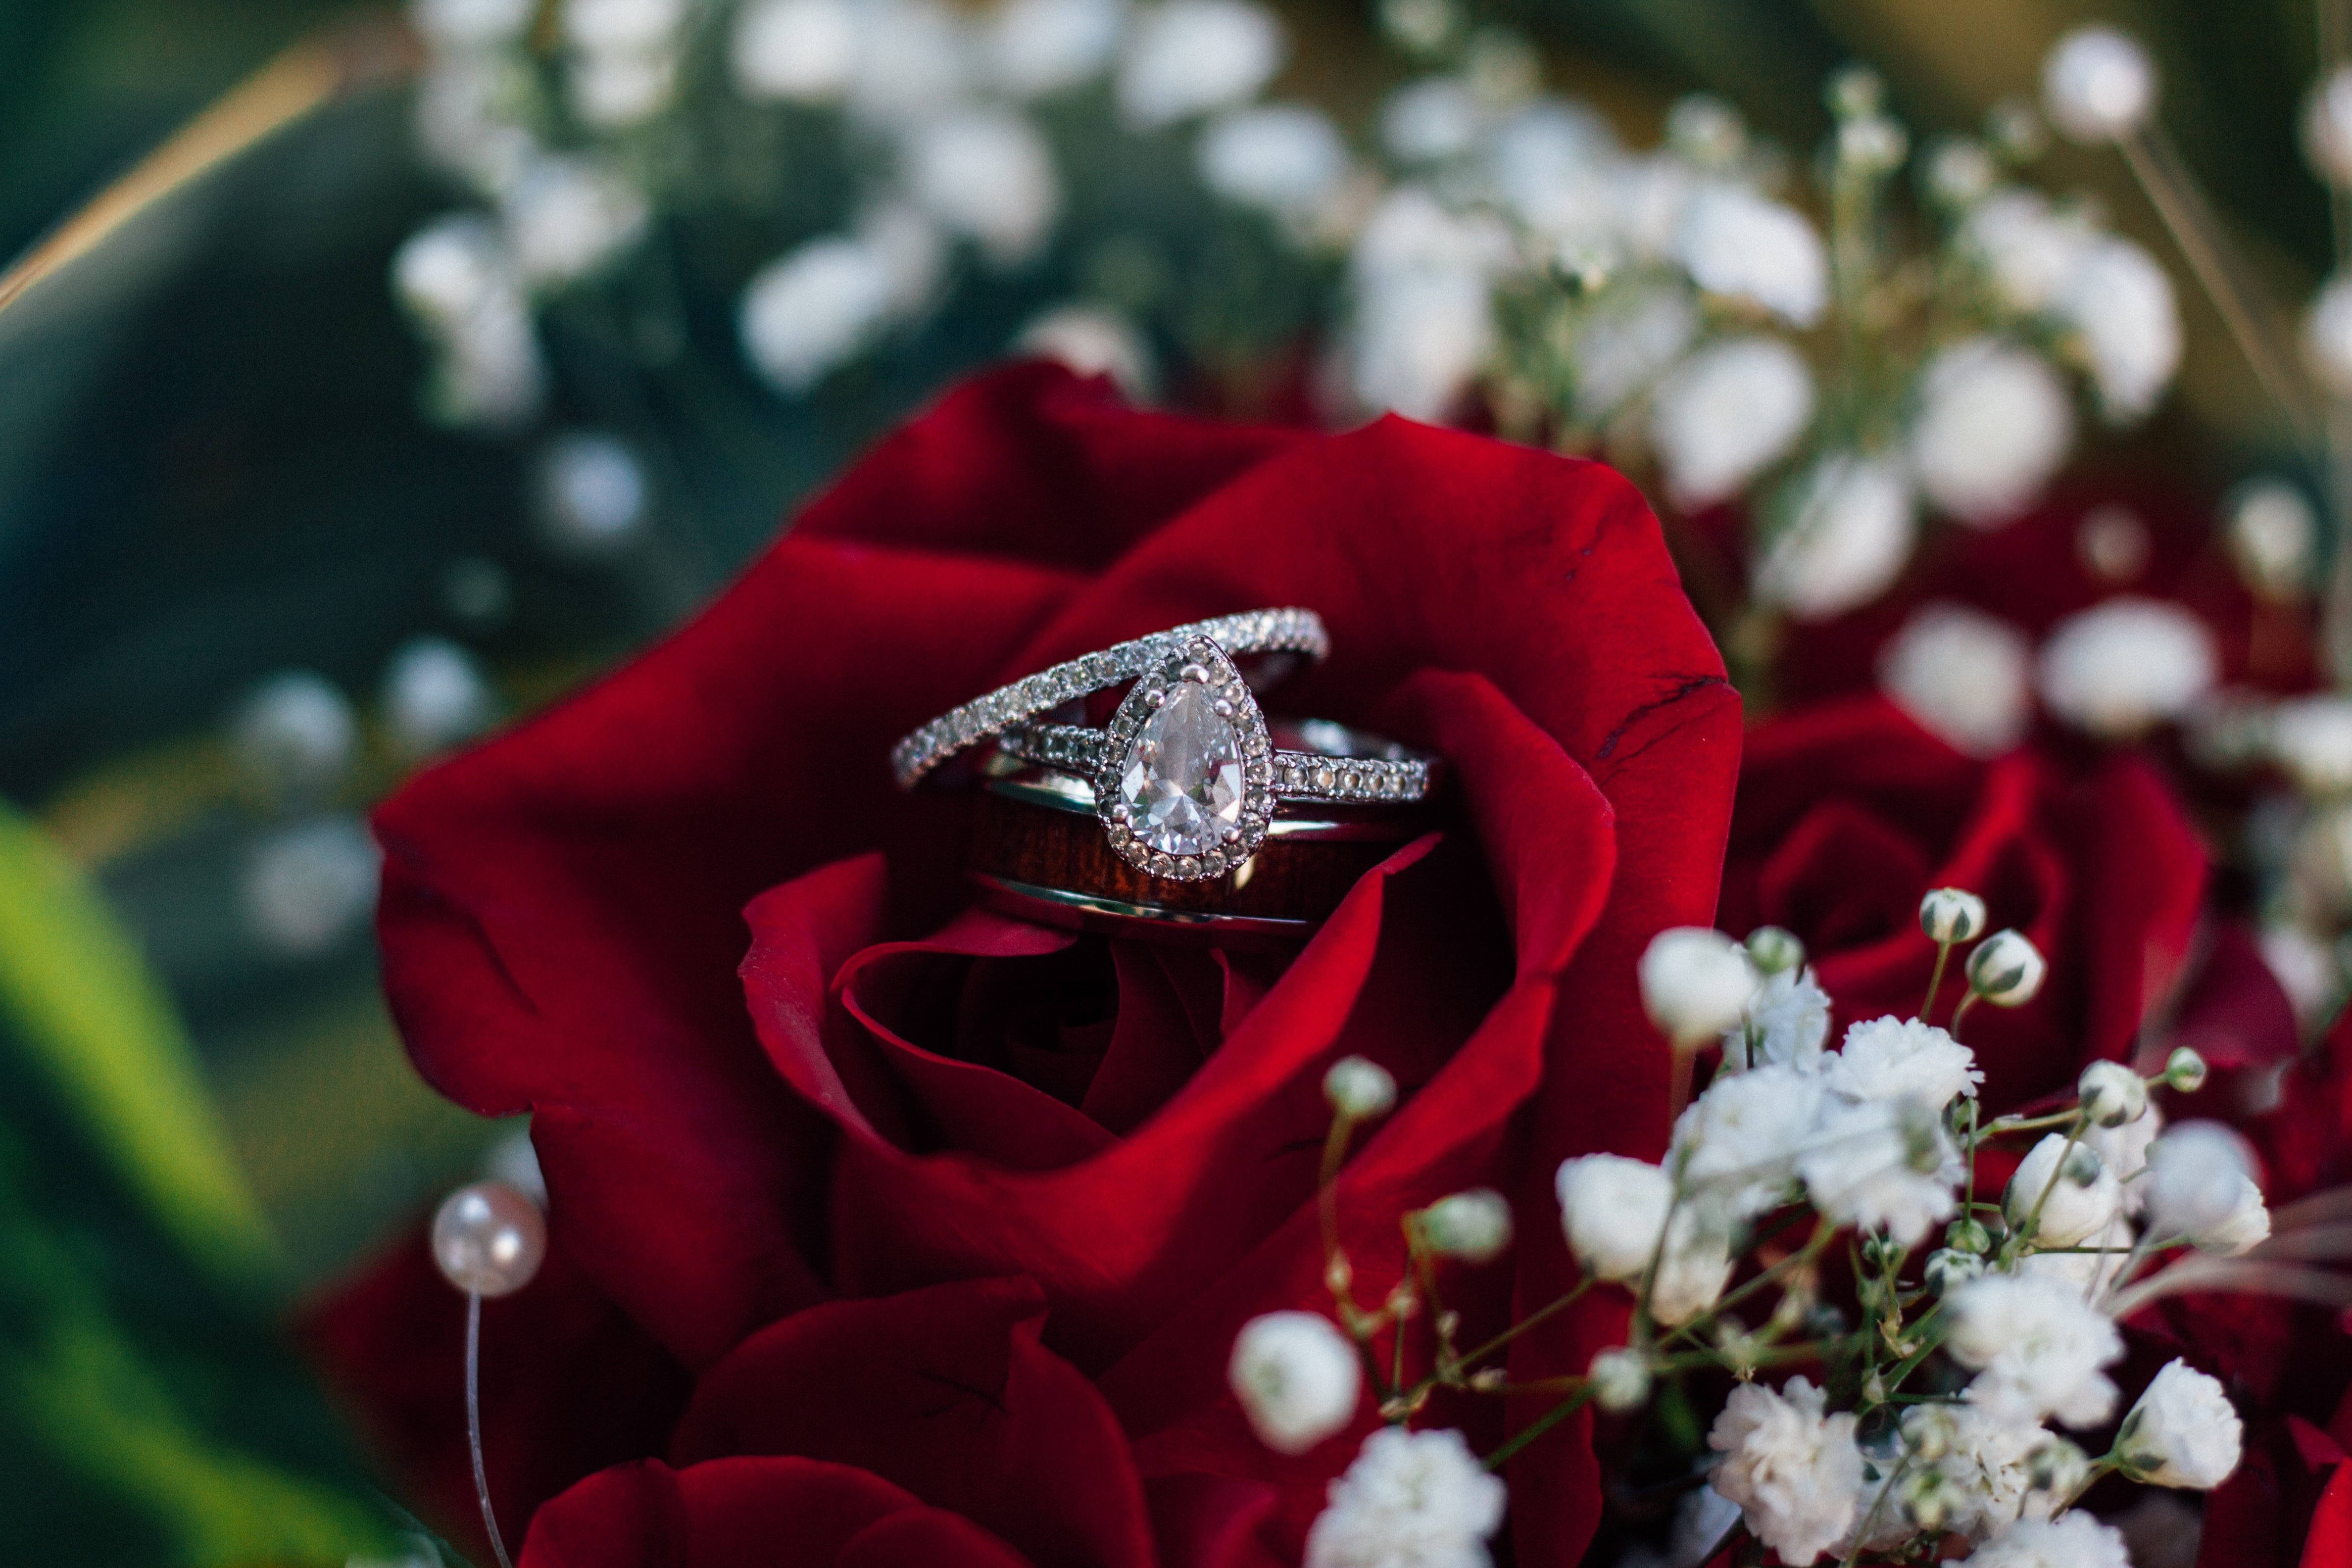 Curtis' Heiratsantrag war ein Traum aus Romantik und roten Rosen und Ellie stimmte sofort zu seine Frau zu werden. | Quelle: Unsplash